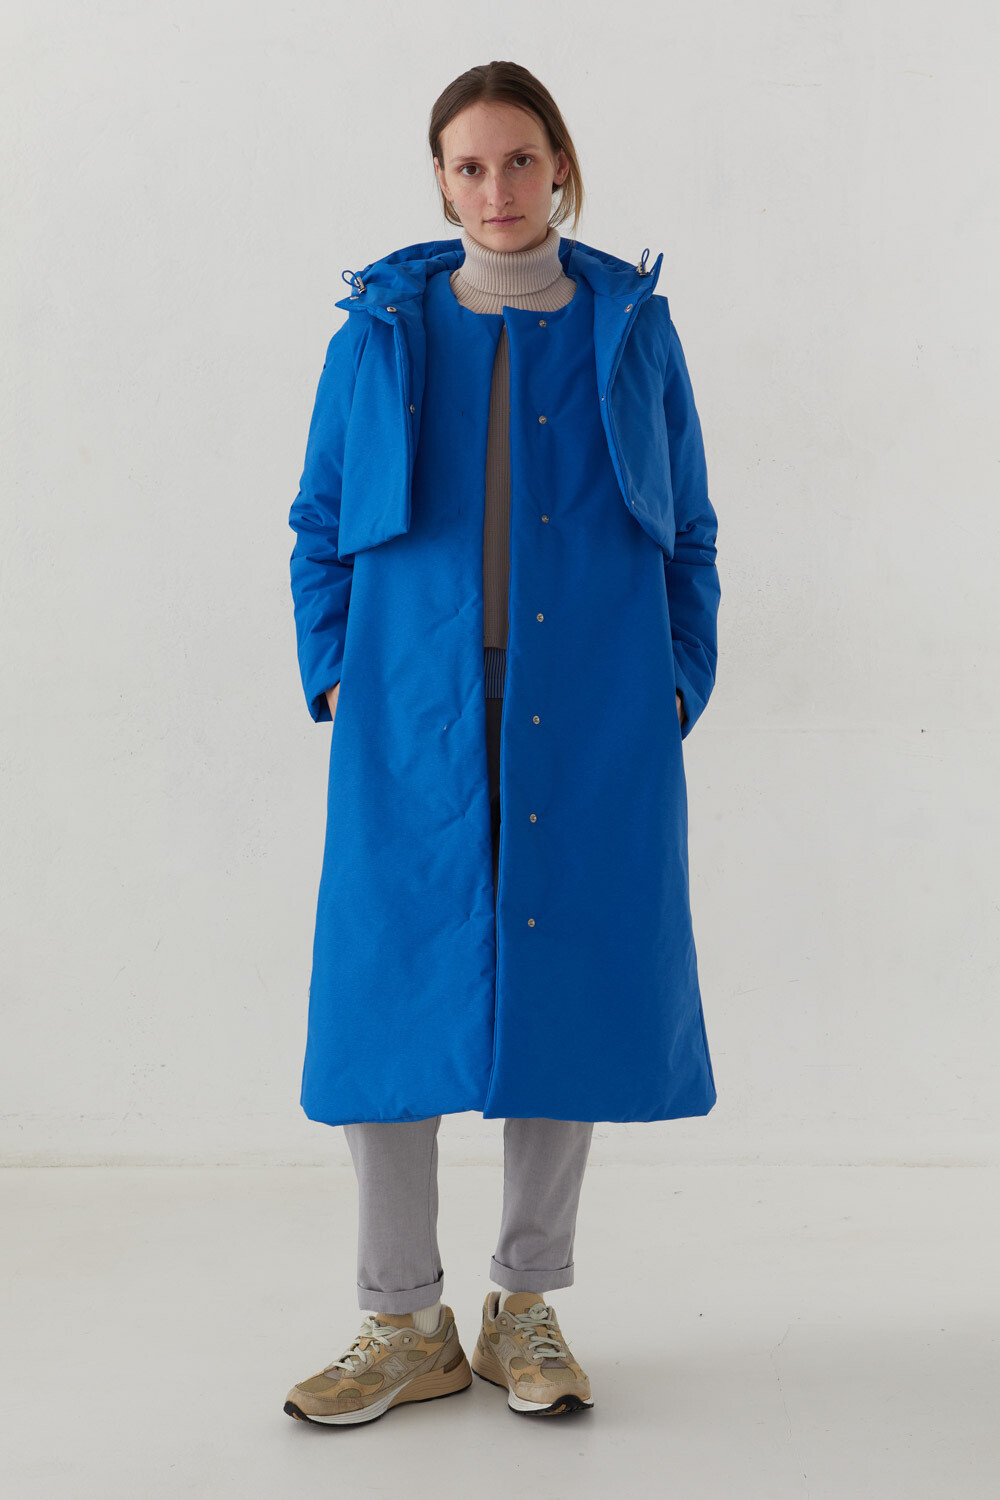 Утепленное пальто из мембраны цвета "синий меланж" с жилетом